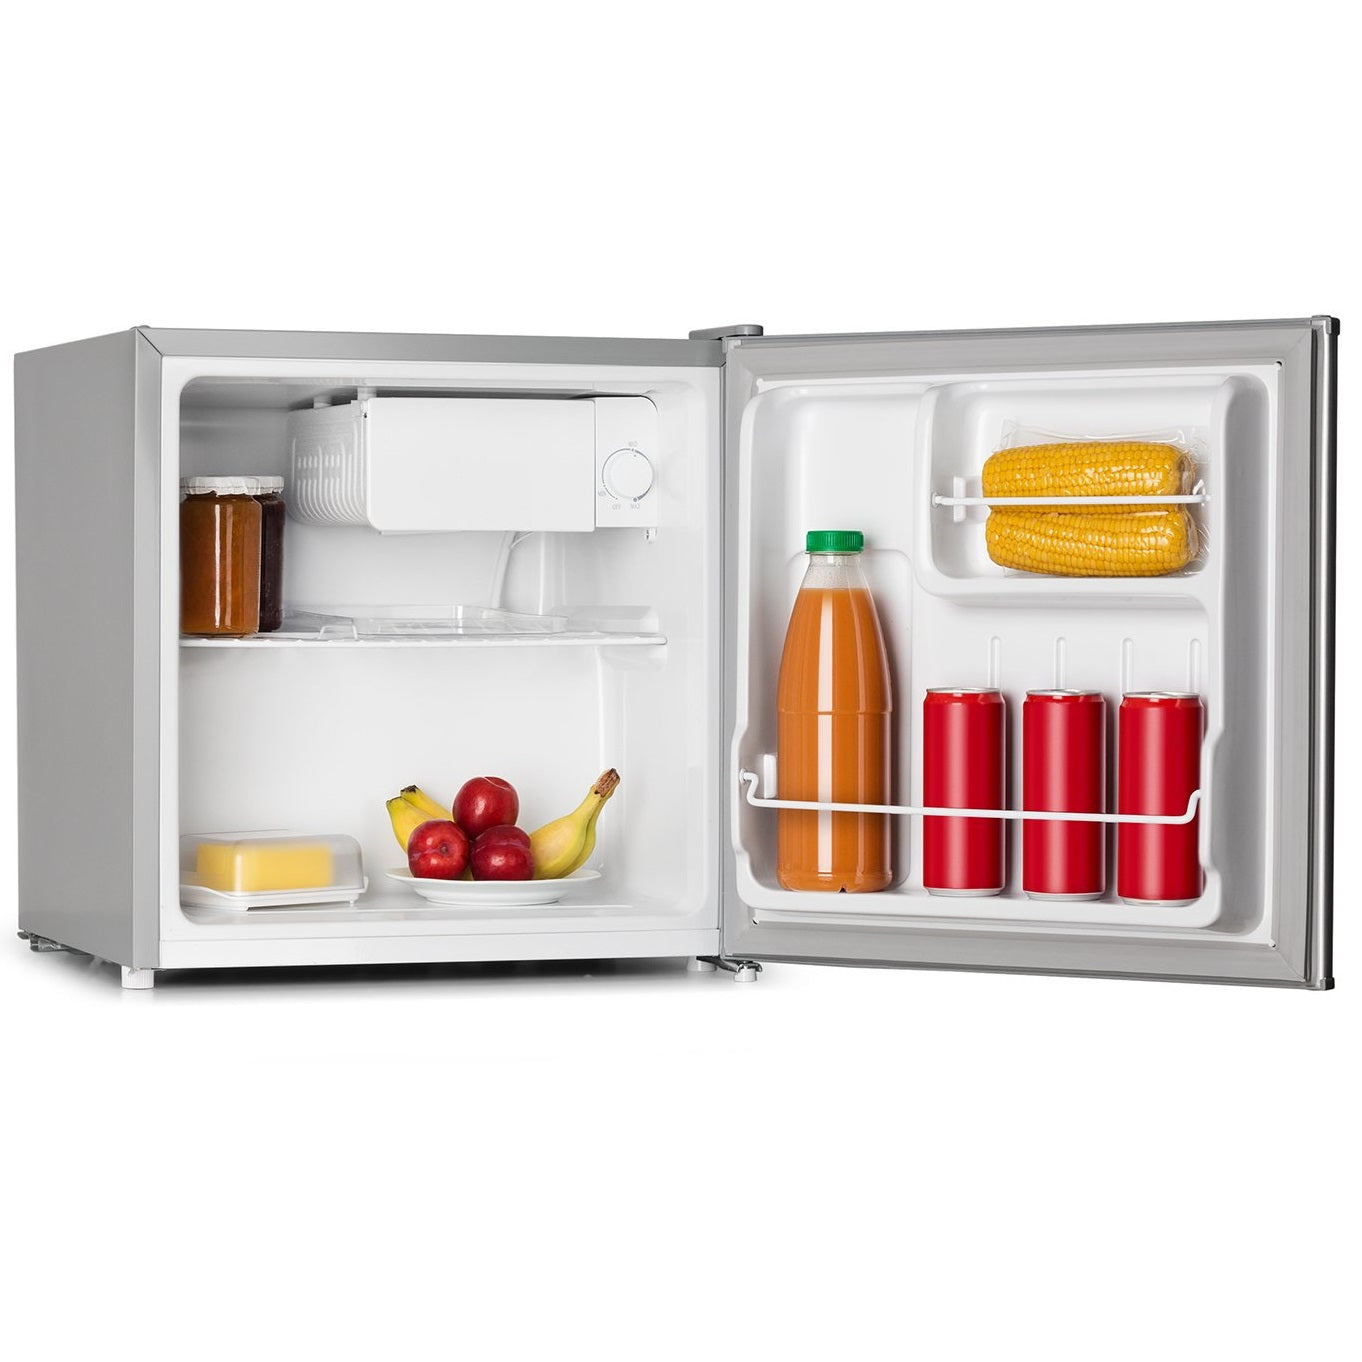 Mini-Kühlschrank mit Gefrierfach BERGEN 46L kompakt und praktisch